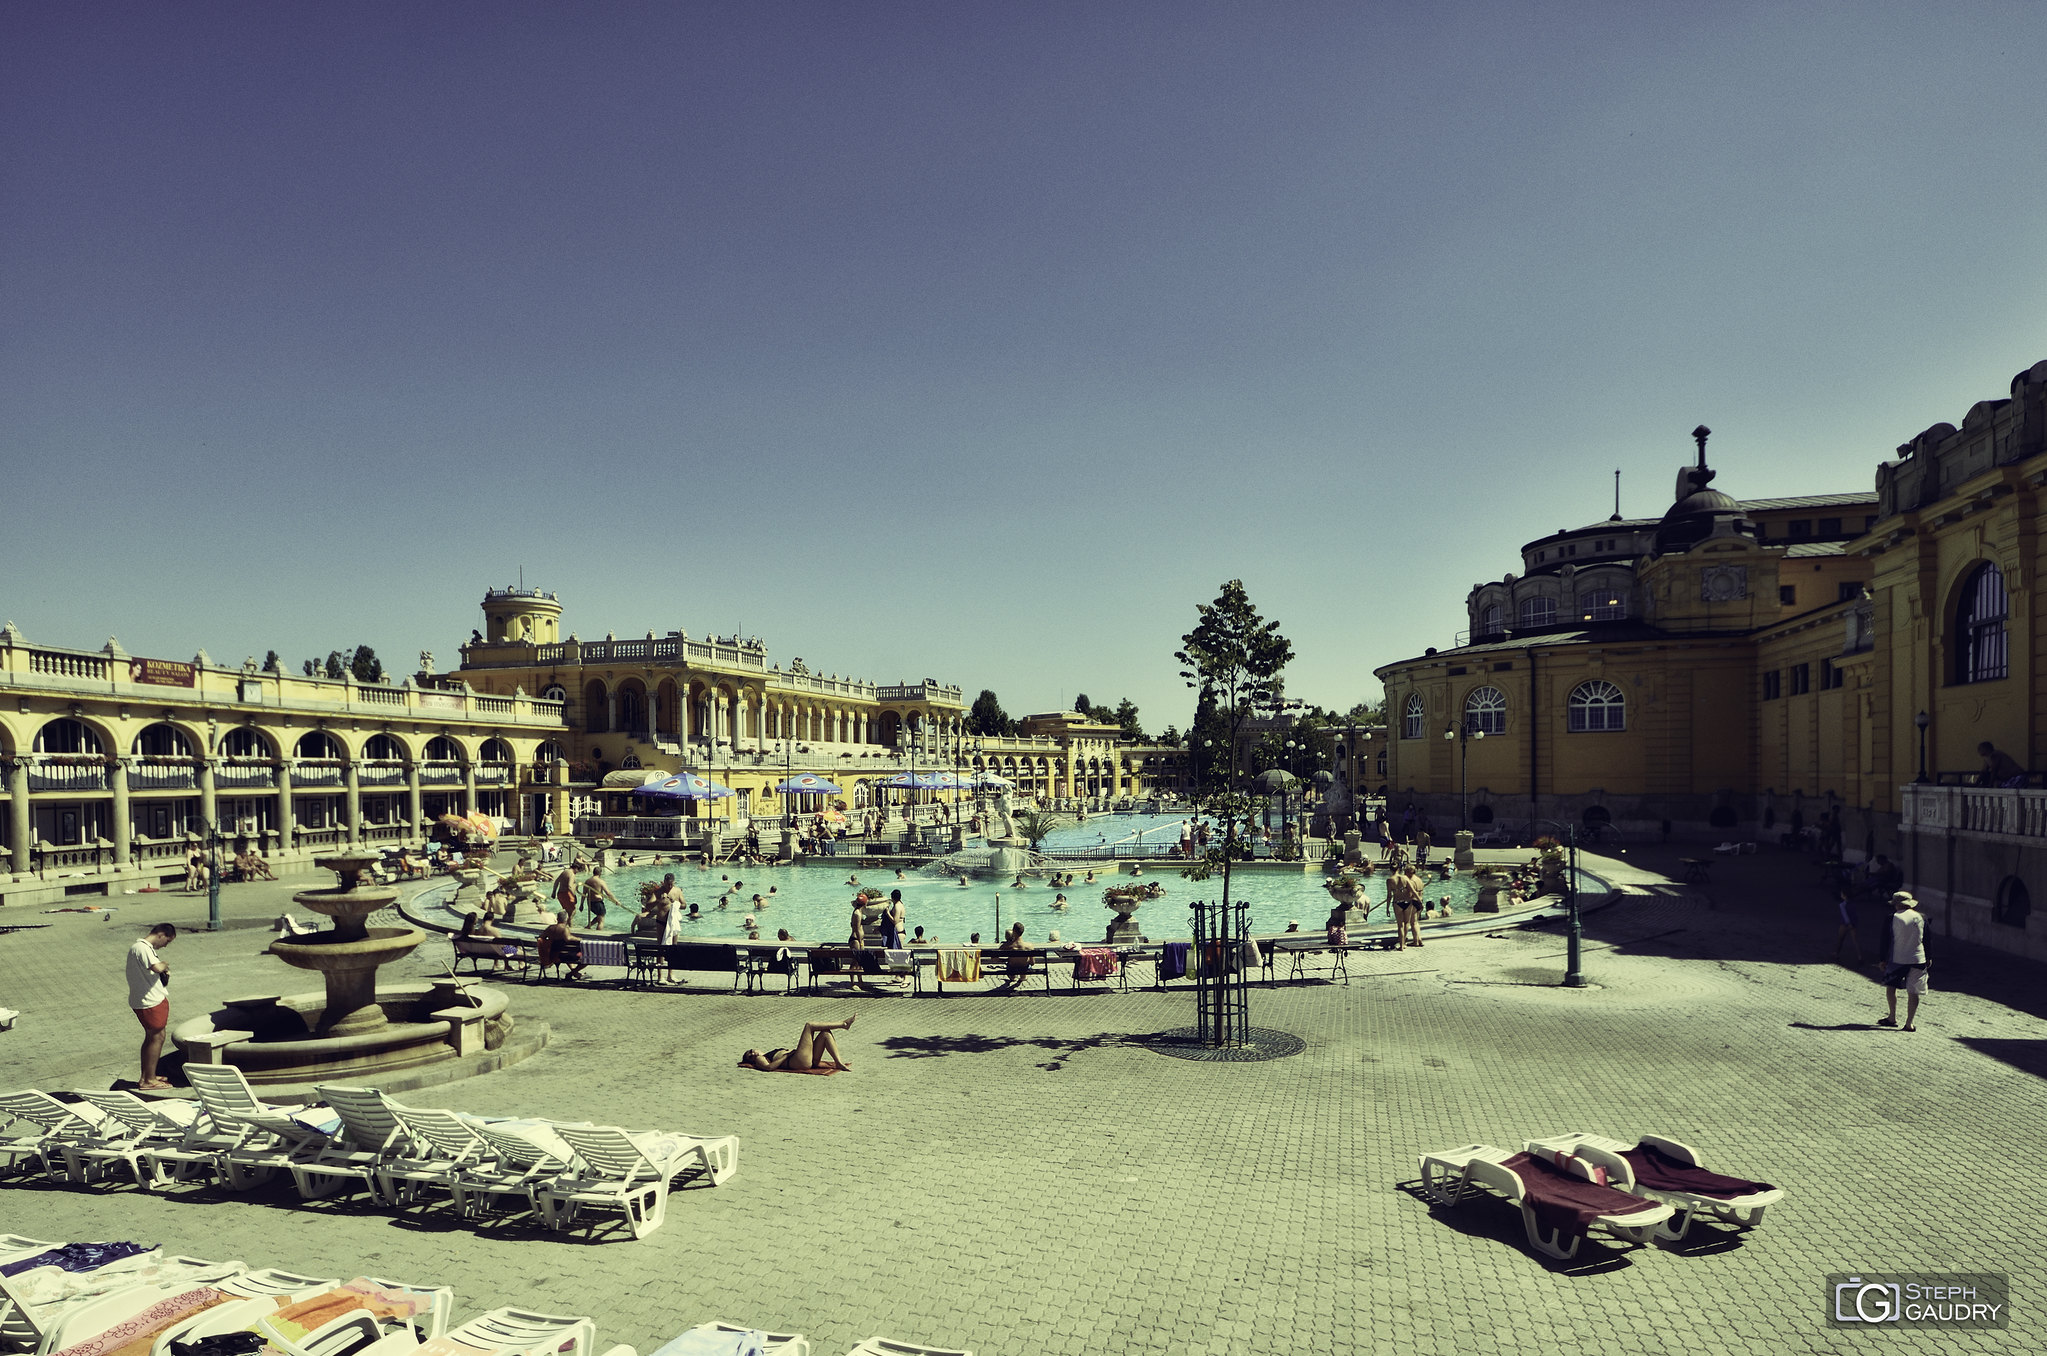 Széchenyi Thermal Bath and Swimming Pool [Klicken Sie hier, um die Diashow zu starten]